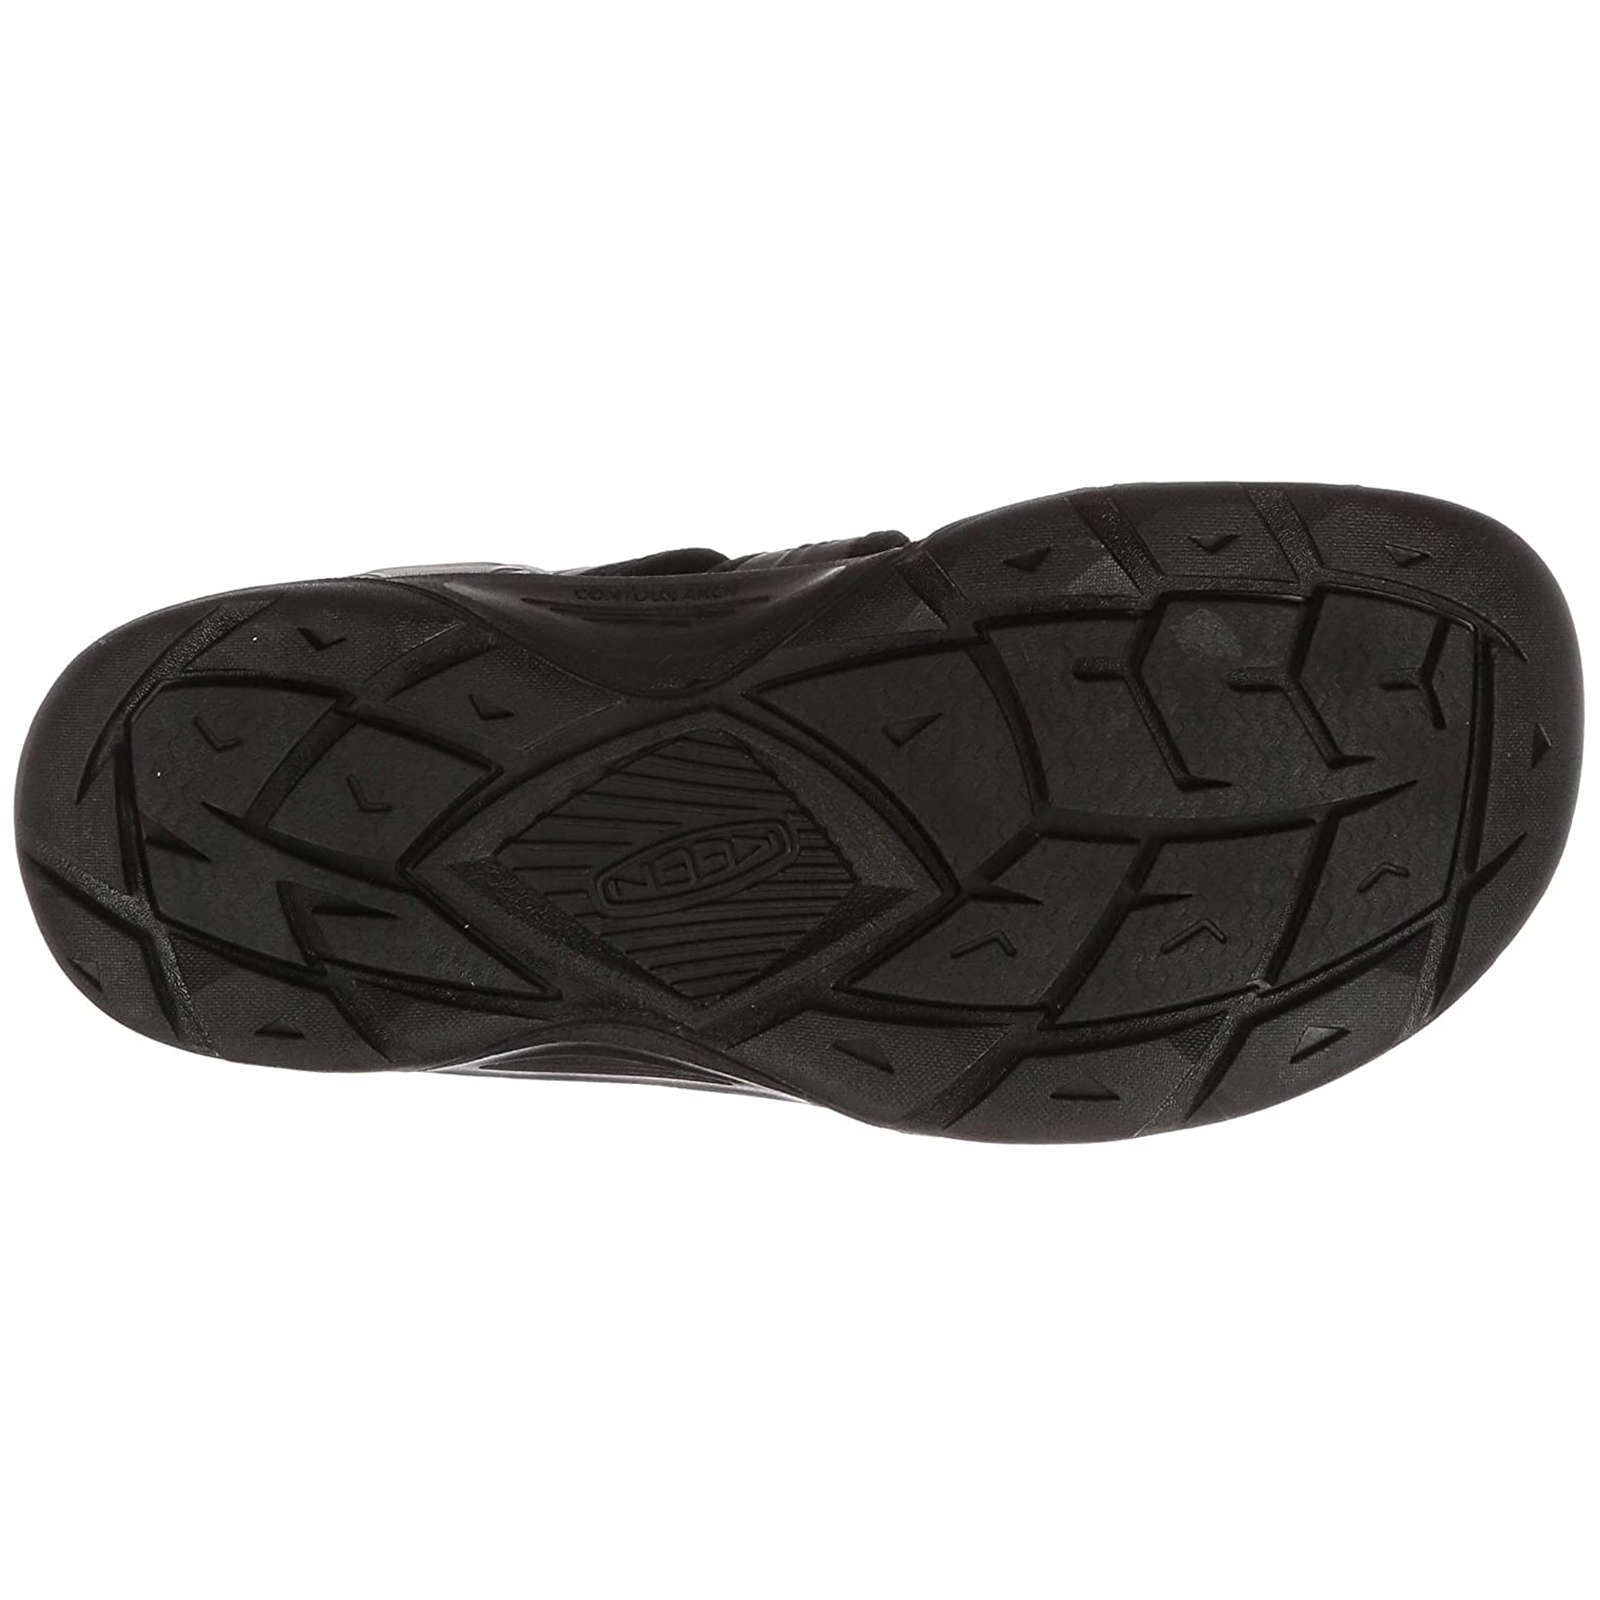 Keen Evofit One Textile Men's Hiking Sandals#color_triple black